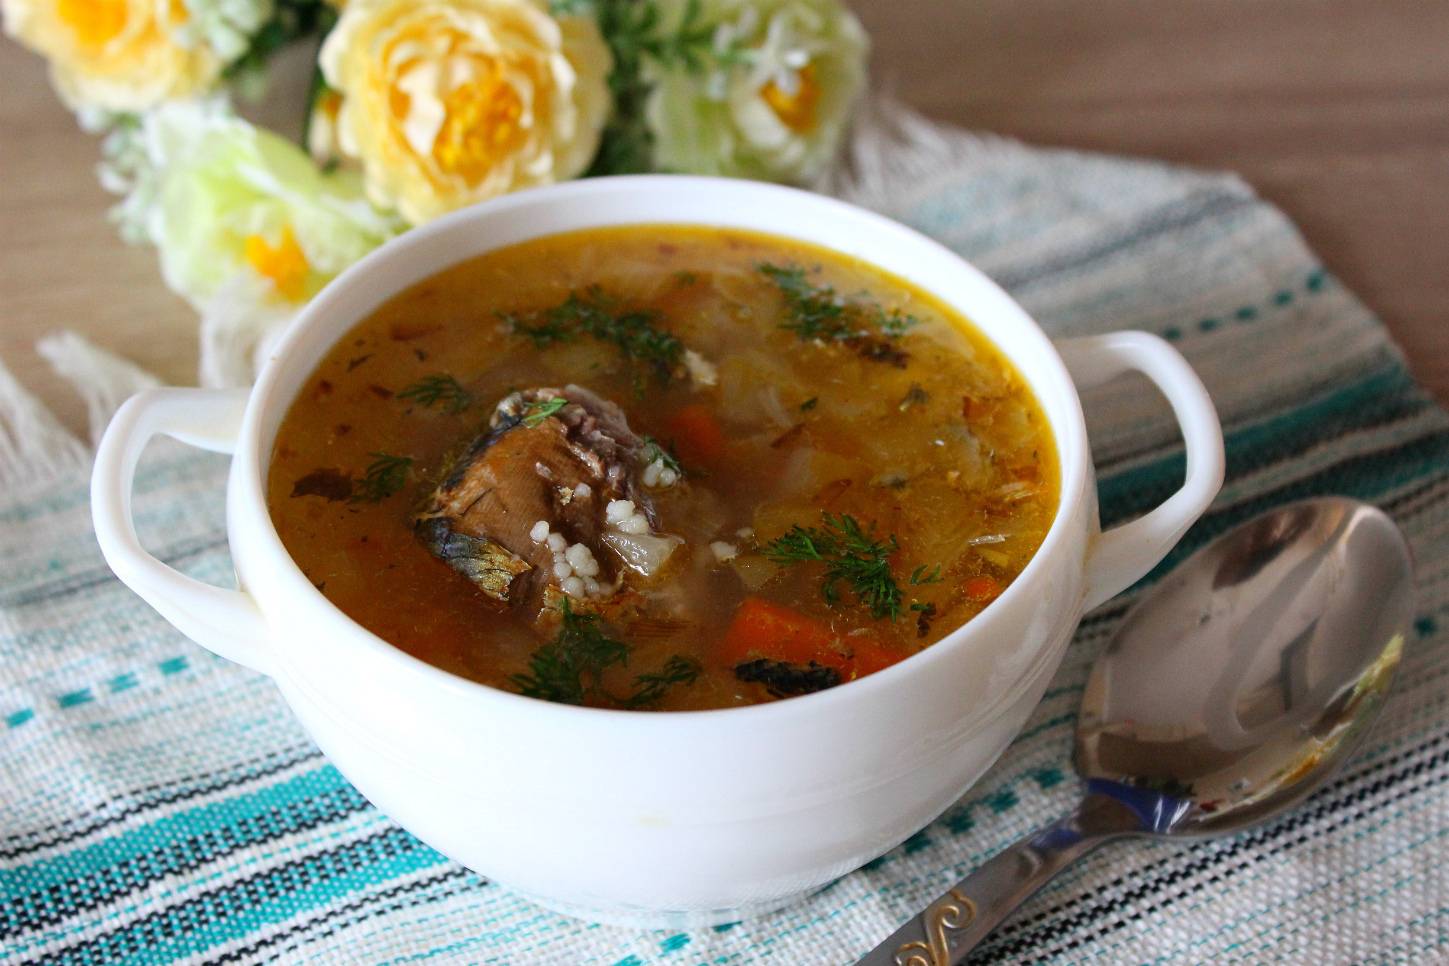 Как сварить суп из консервов сайры с картошкой - 5 вкусных рецептов